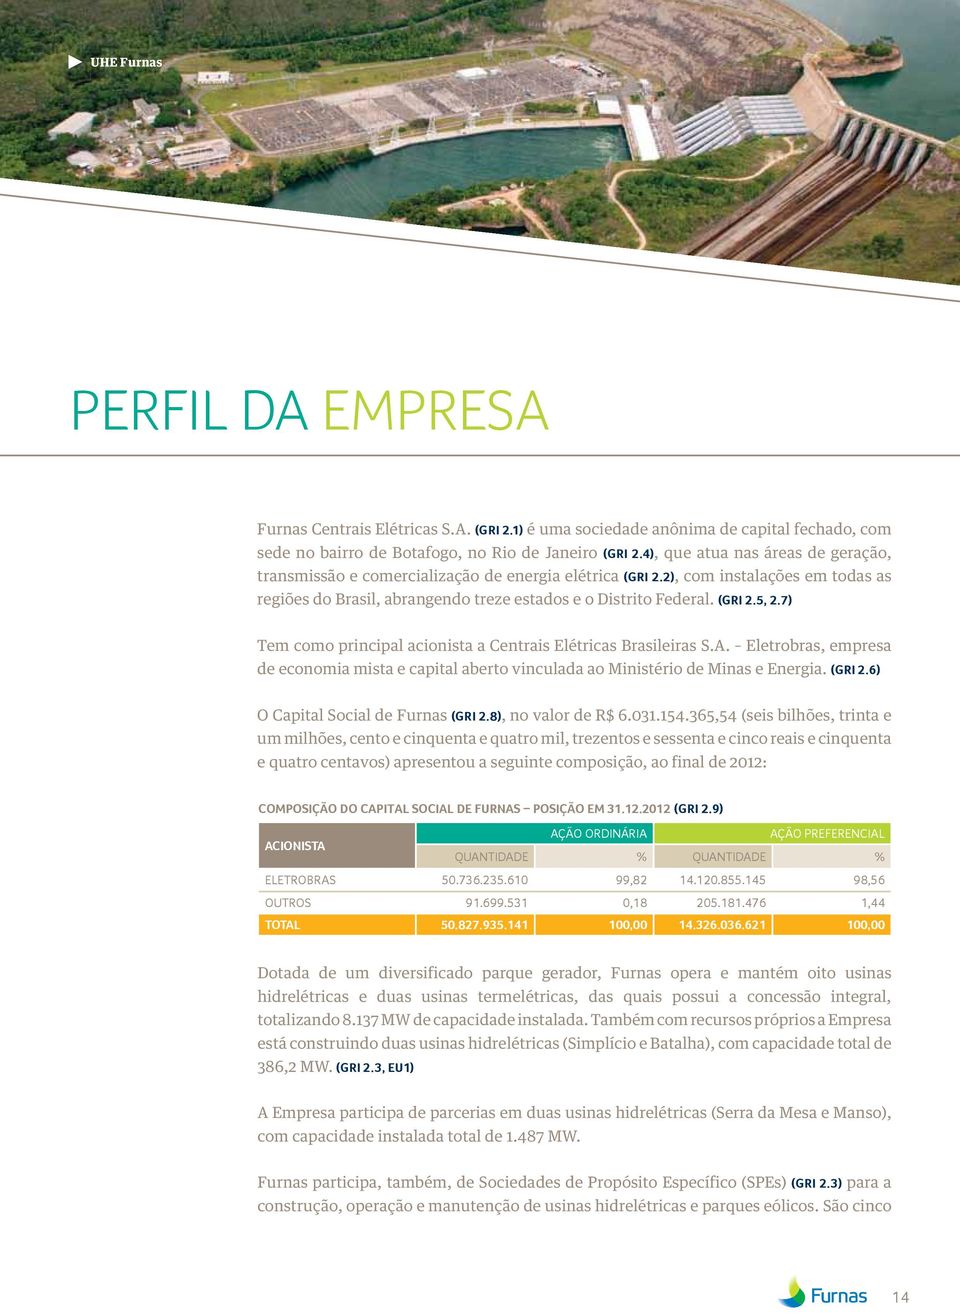 7) Tem como principal acionista a Centrais Elétricas Brasileiras S.A. Eletrobras, empresa de economia mista e capital aberto vinculada ao Ministério de Minas e Energia. (GRI 2.